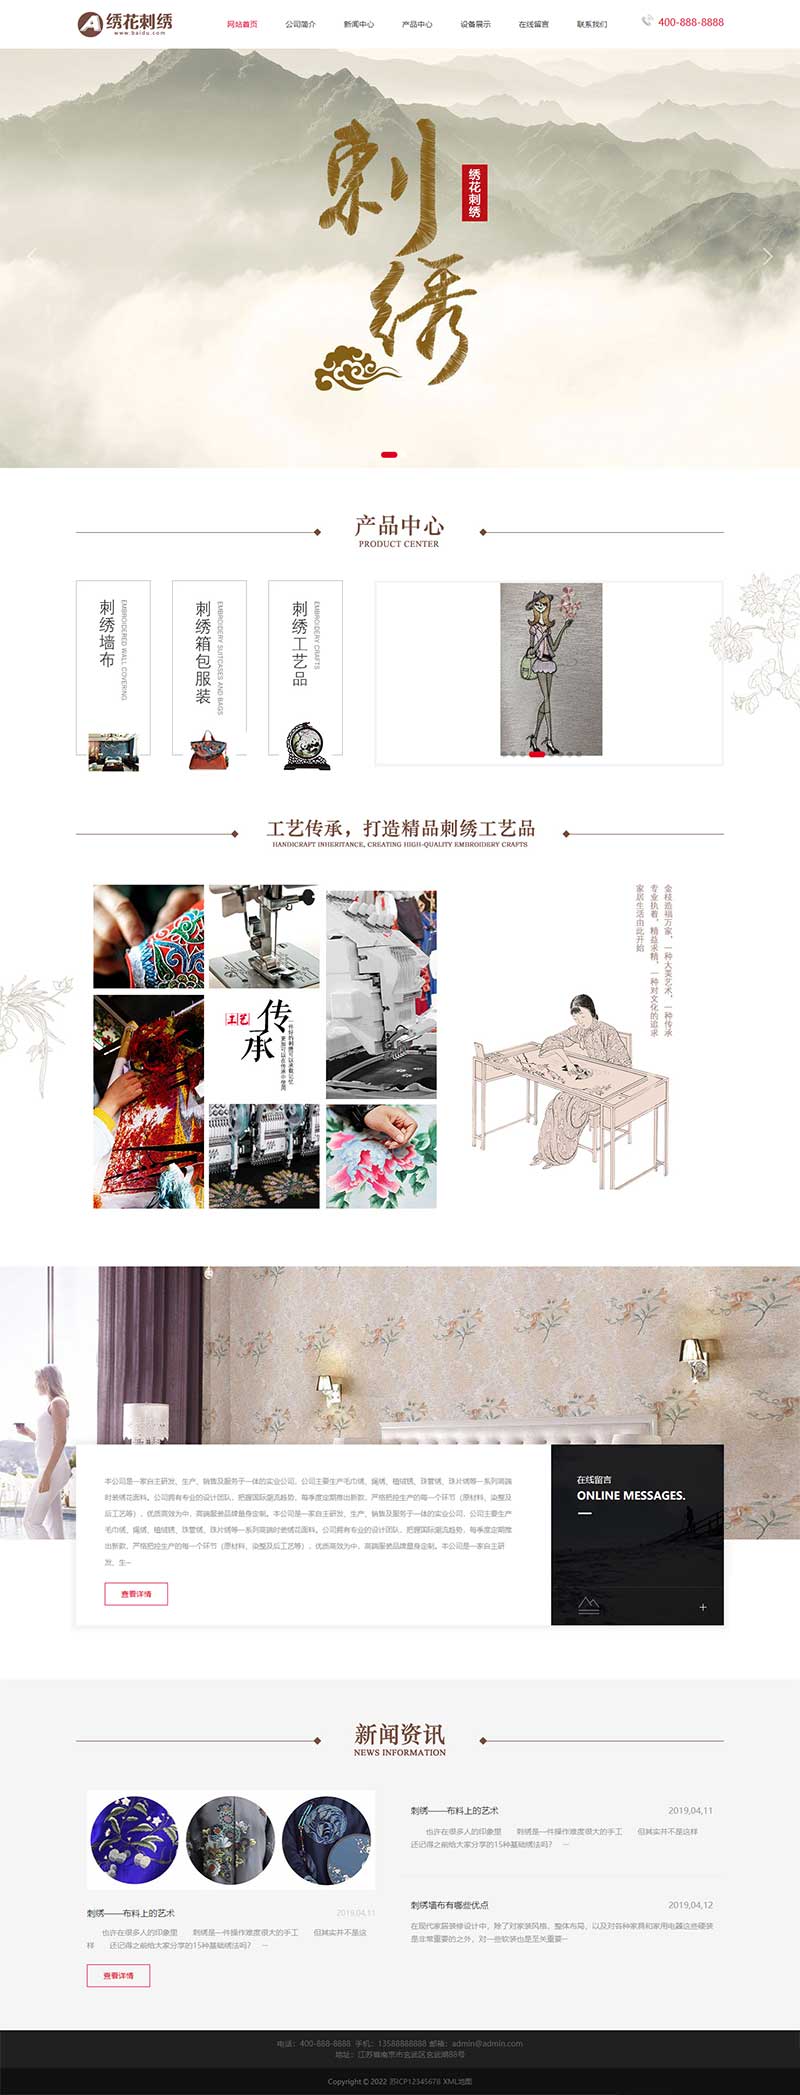 绣花刺绣网站模板 传统手工工艺网站源码下载下载